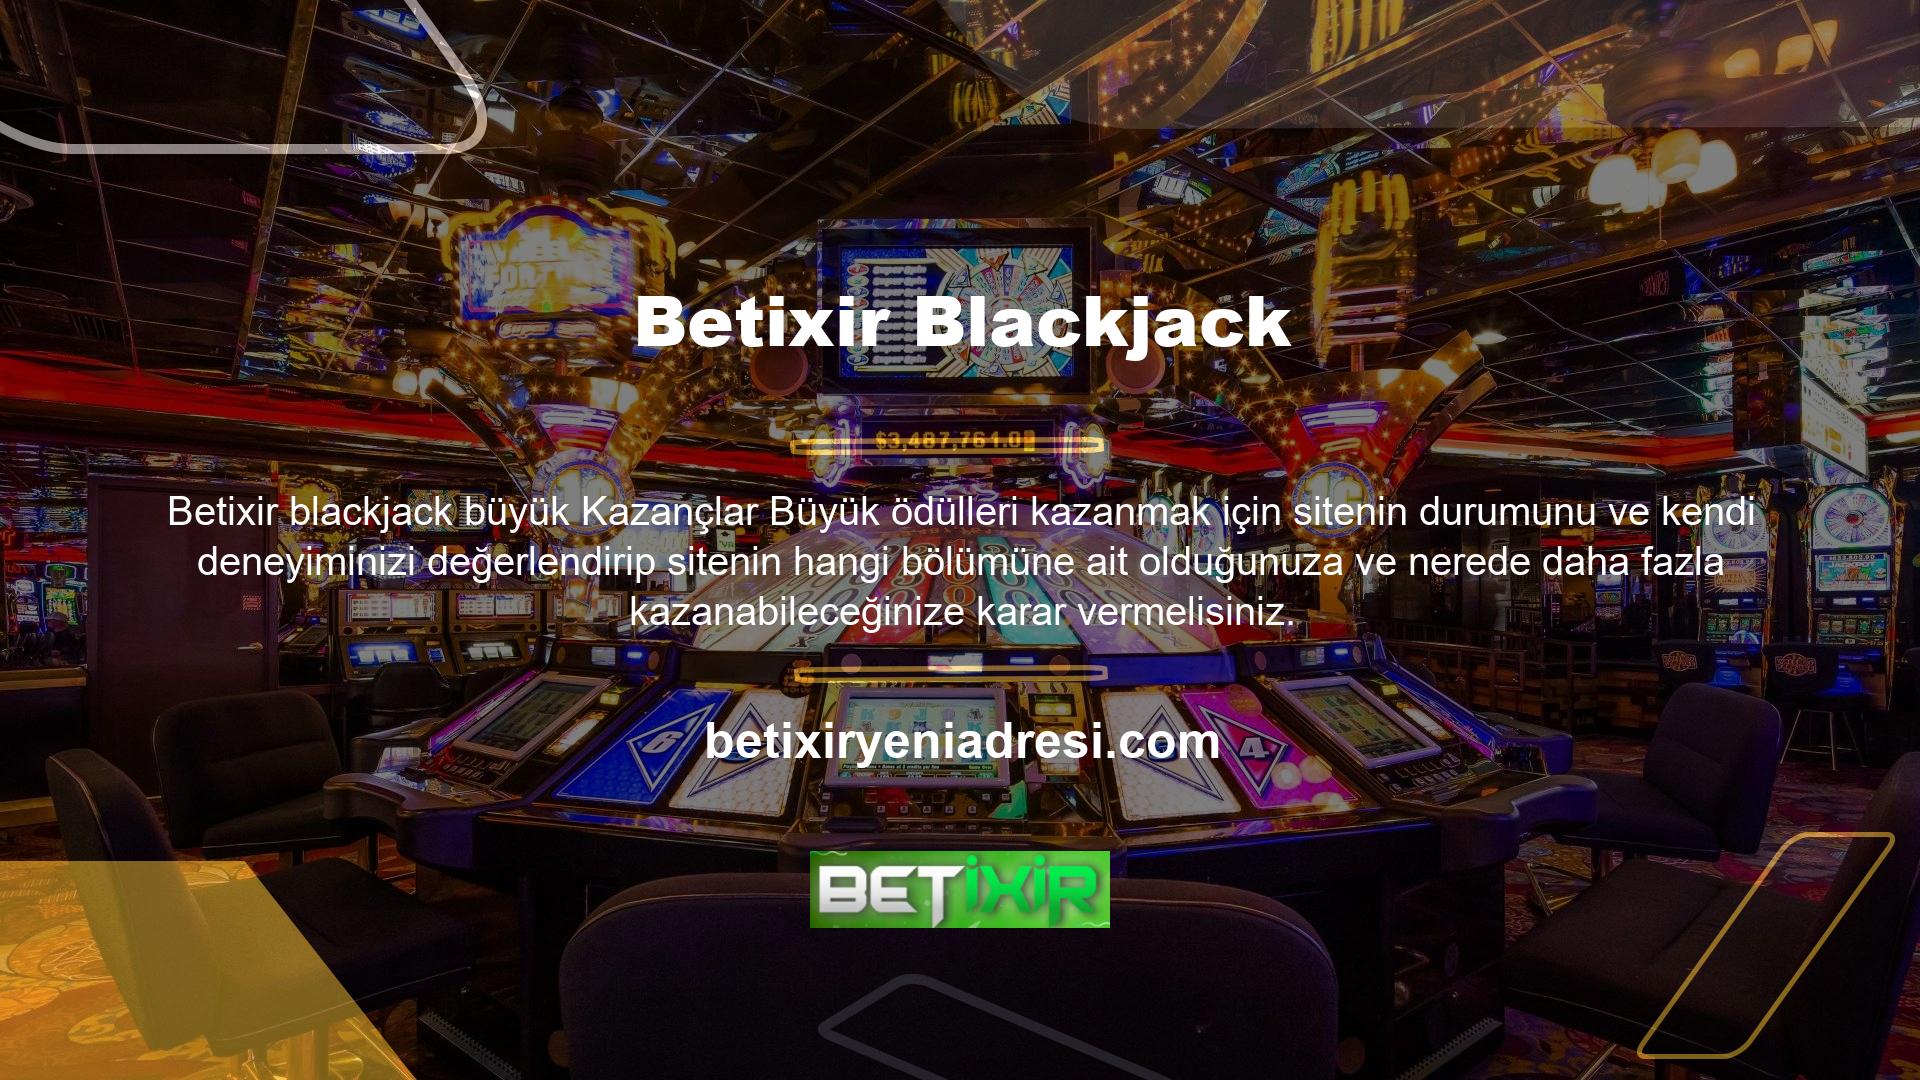 Eğer poker oyunlarının daha karlı olduğunu düşünüyorsanız Betixir blackjack seçeneği sizin için en iyi seçeneklerden biridir